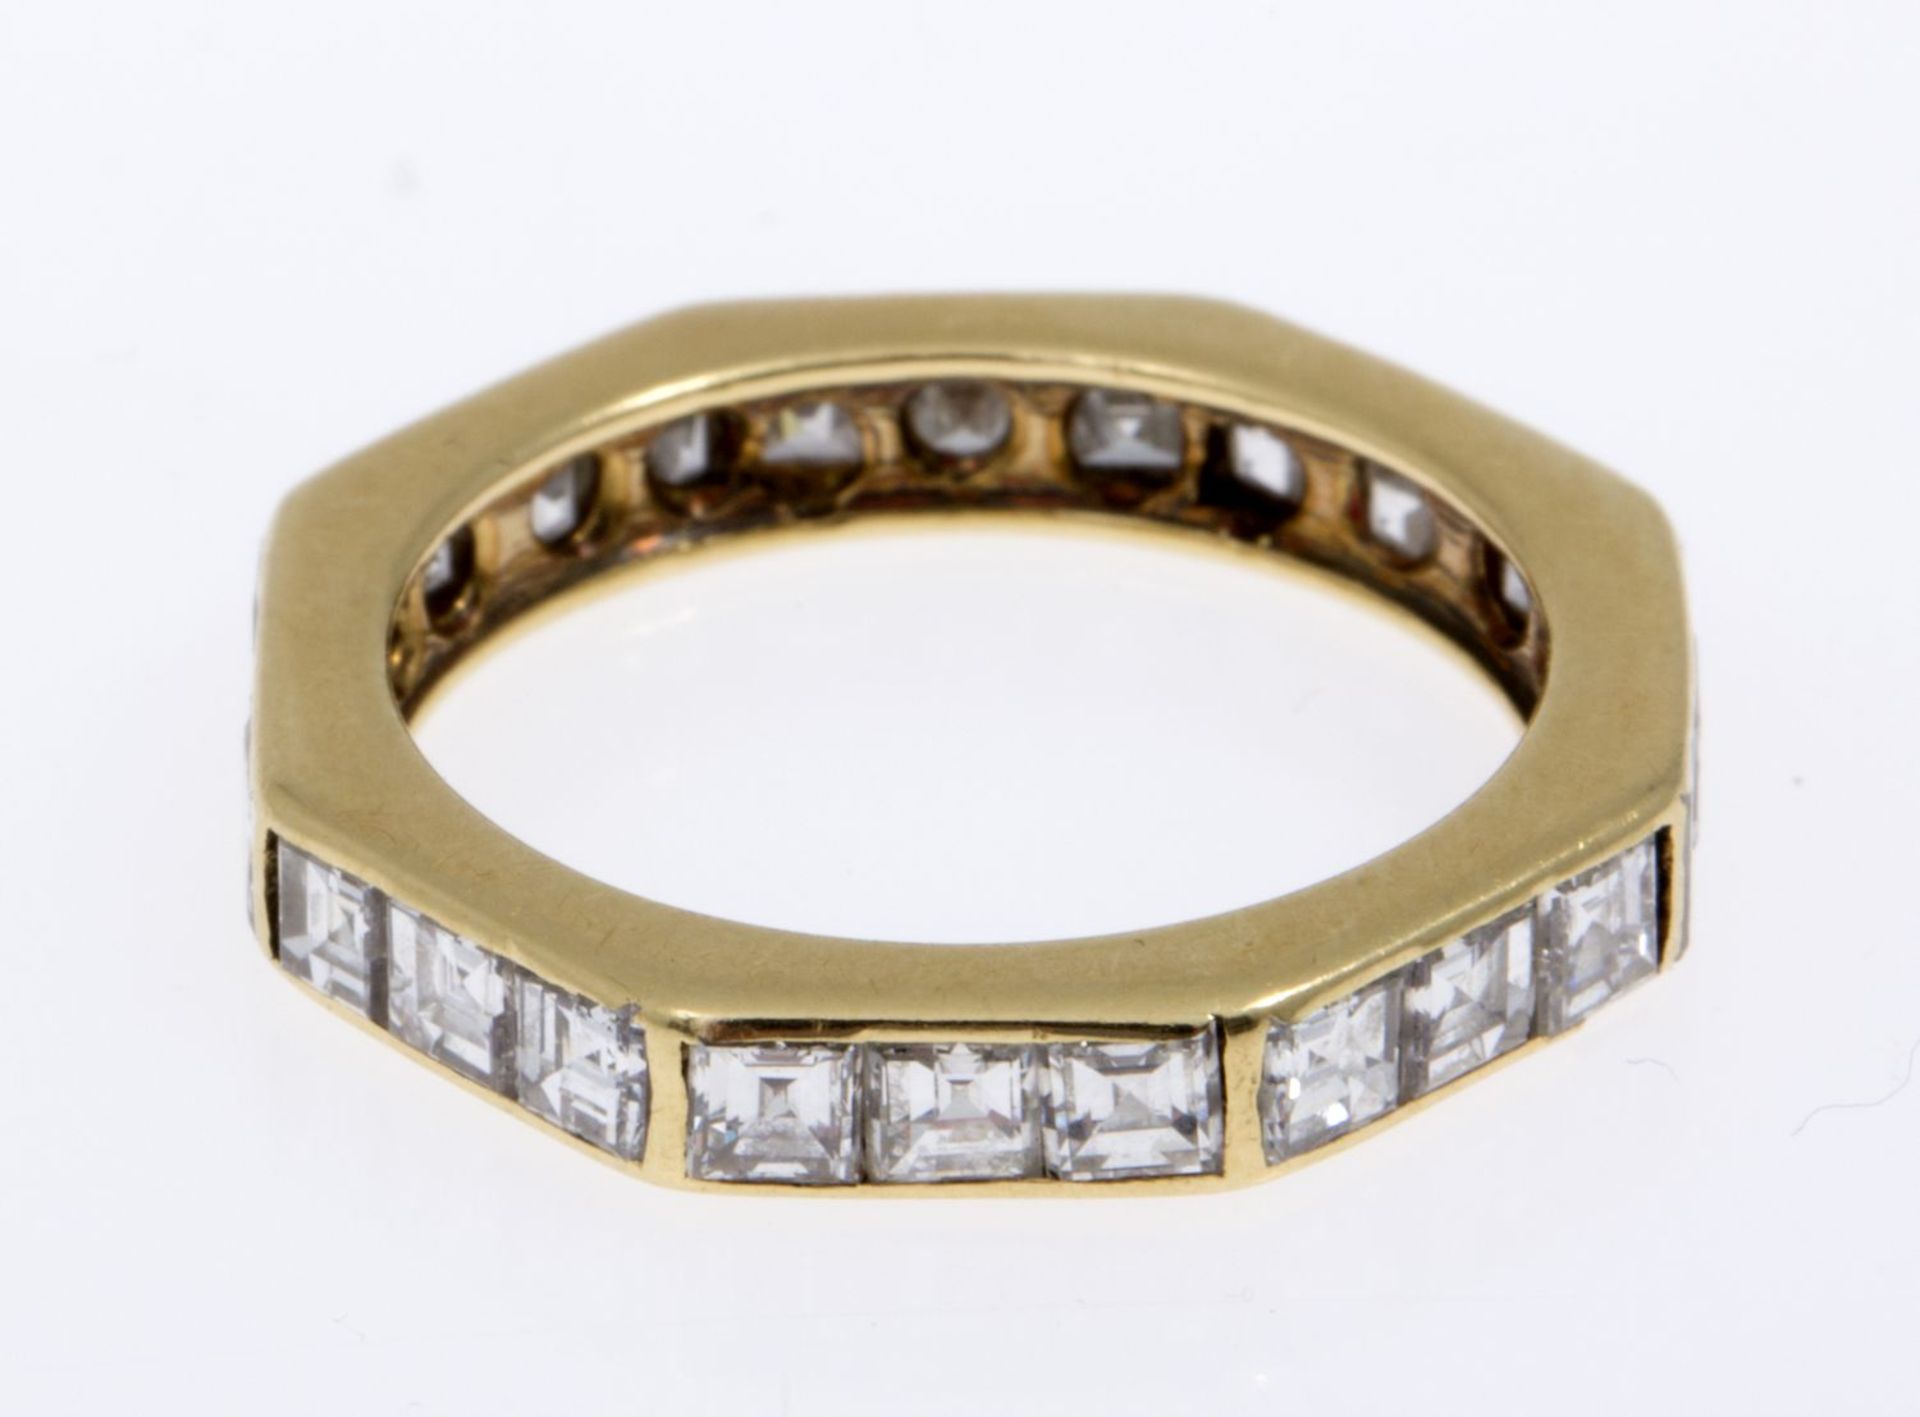 Memory-Ring mit DiamantenGelbgold 750 (geprüft). Oktogonale Ringschiene ausgefasst mit 24 Dia.- - Bild 2 aus 2